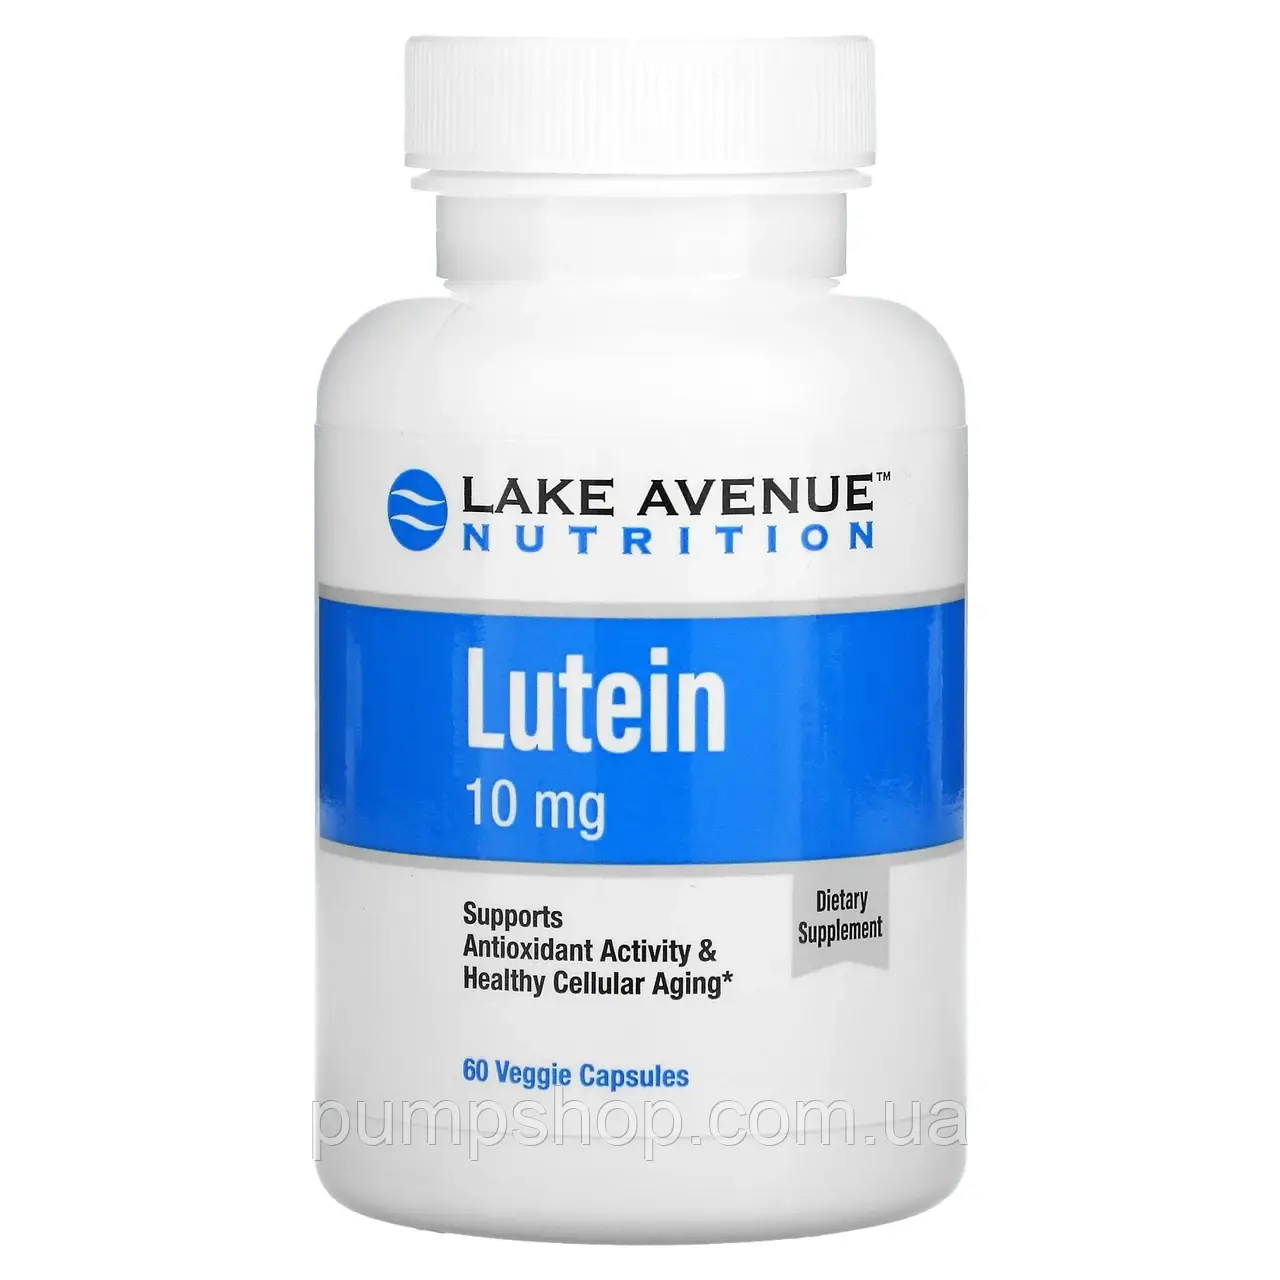 Лютеин Lake Avenue Nutrition Lutein 10 mg 60 капс.